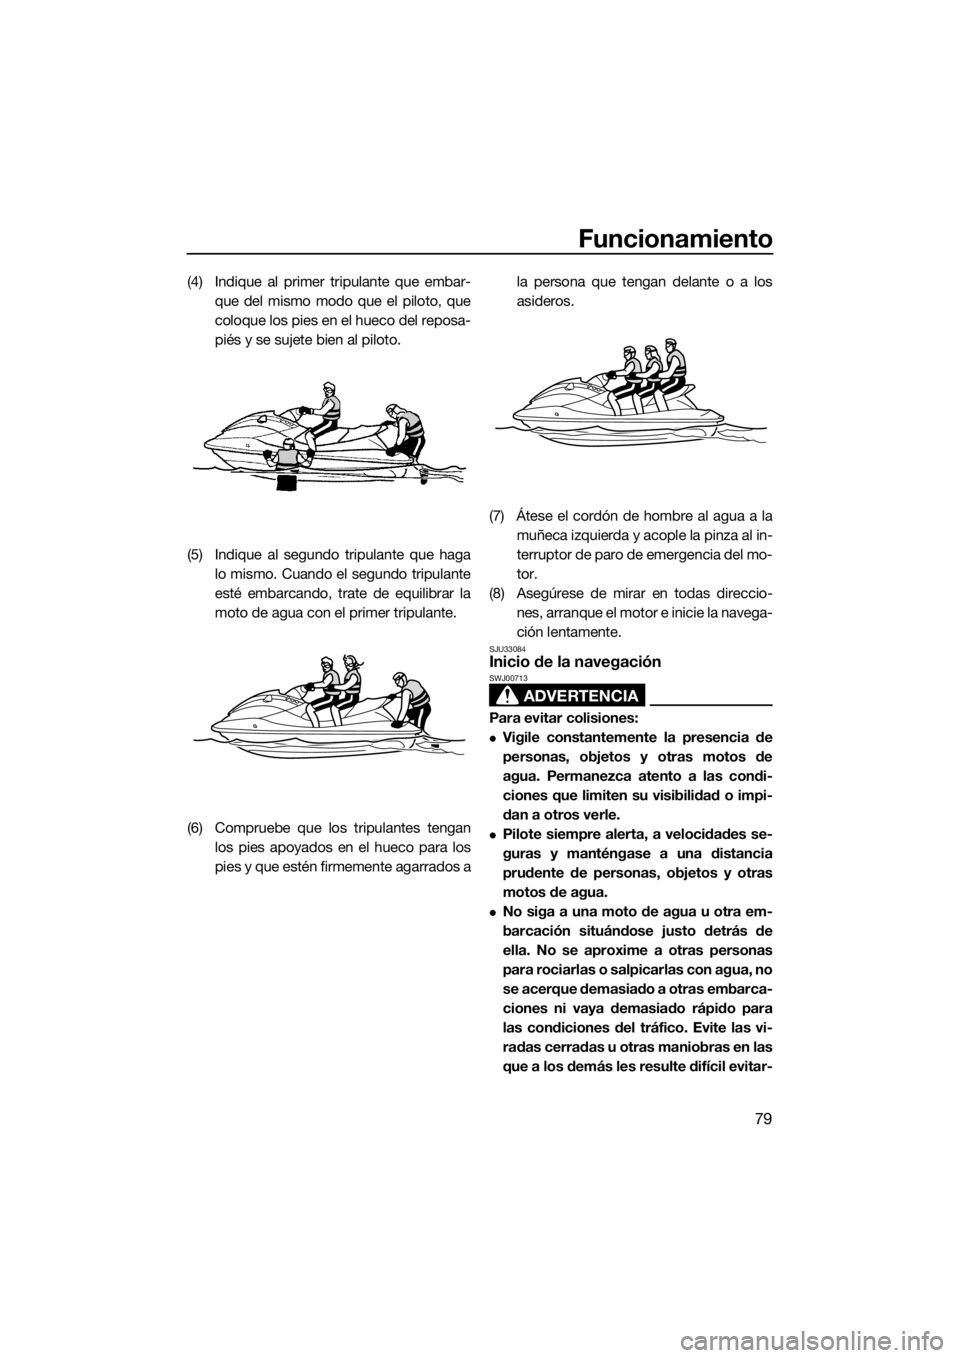 YAMAHA VX 2020  Manuale de Empleo (in Spanish) Funcionamiento
79
(4) Indique al primer tripulante que embar-
que del mismo modo que el piloto, que
coloque los pies en el hueco del reposa-
piés y se sujete bien al piloto.
(5) Indique al segundo tr